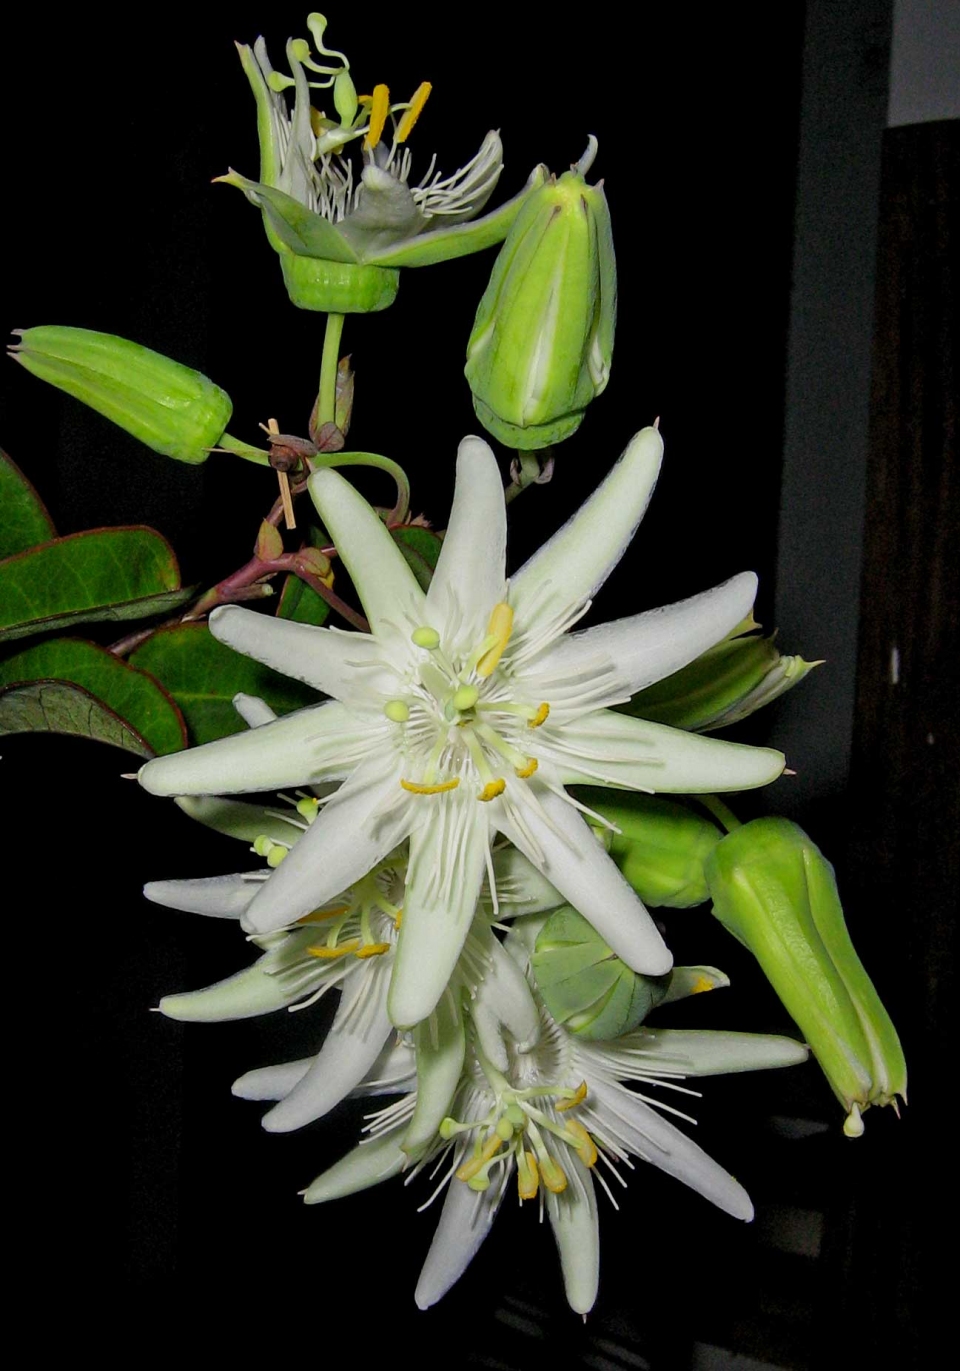 Passiflora galbana